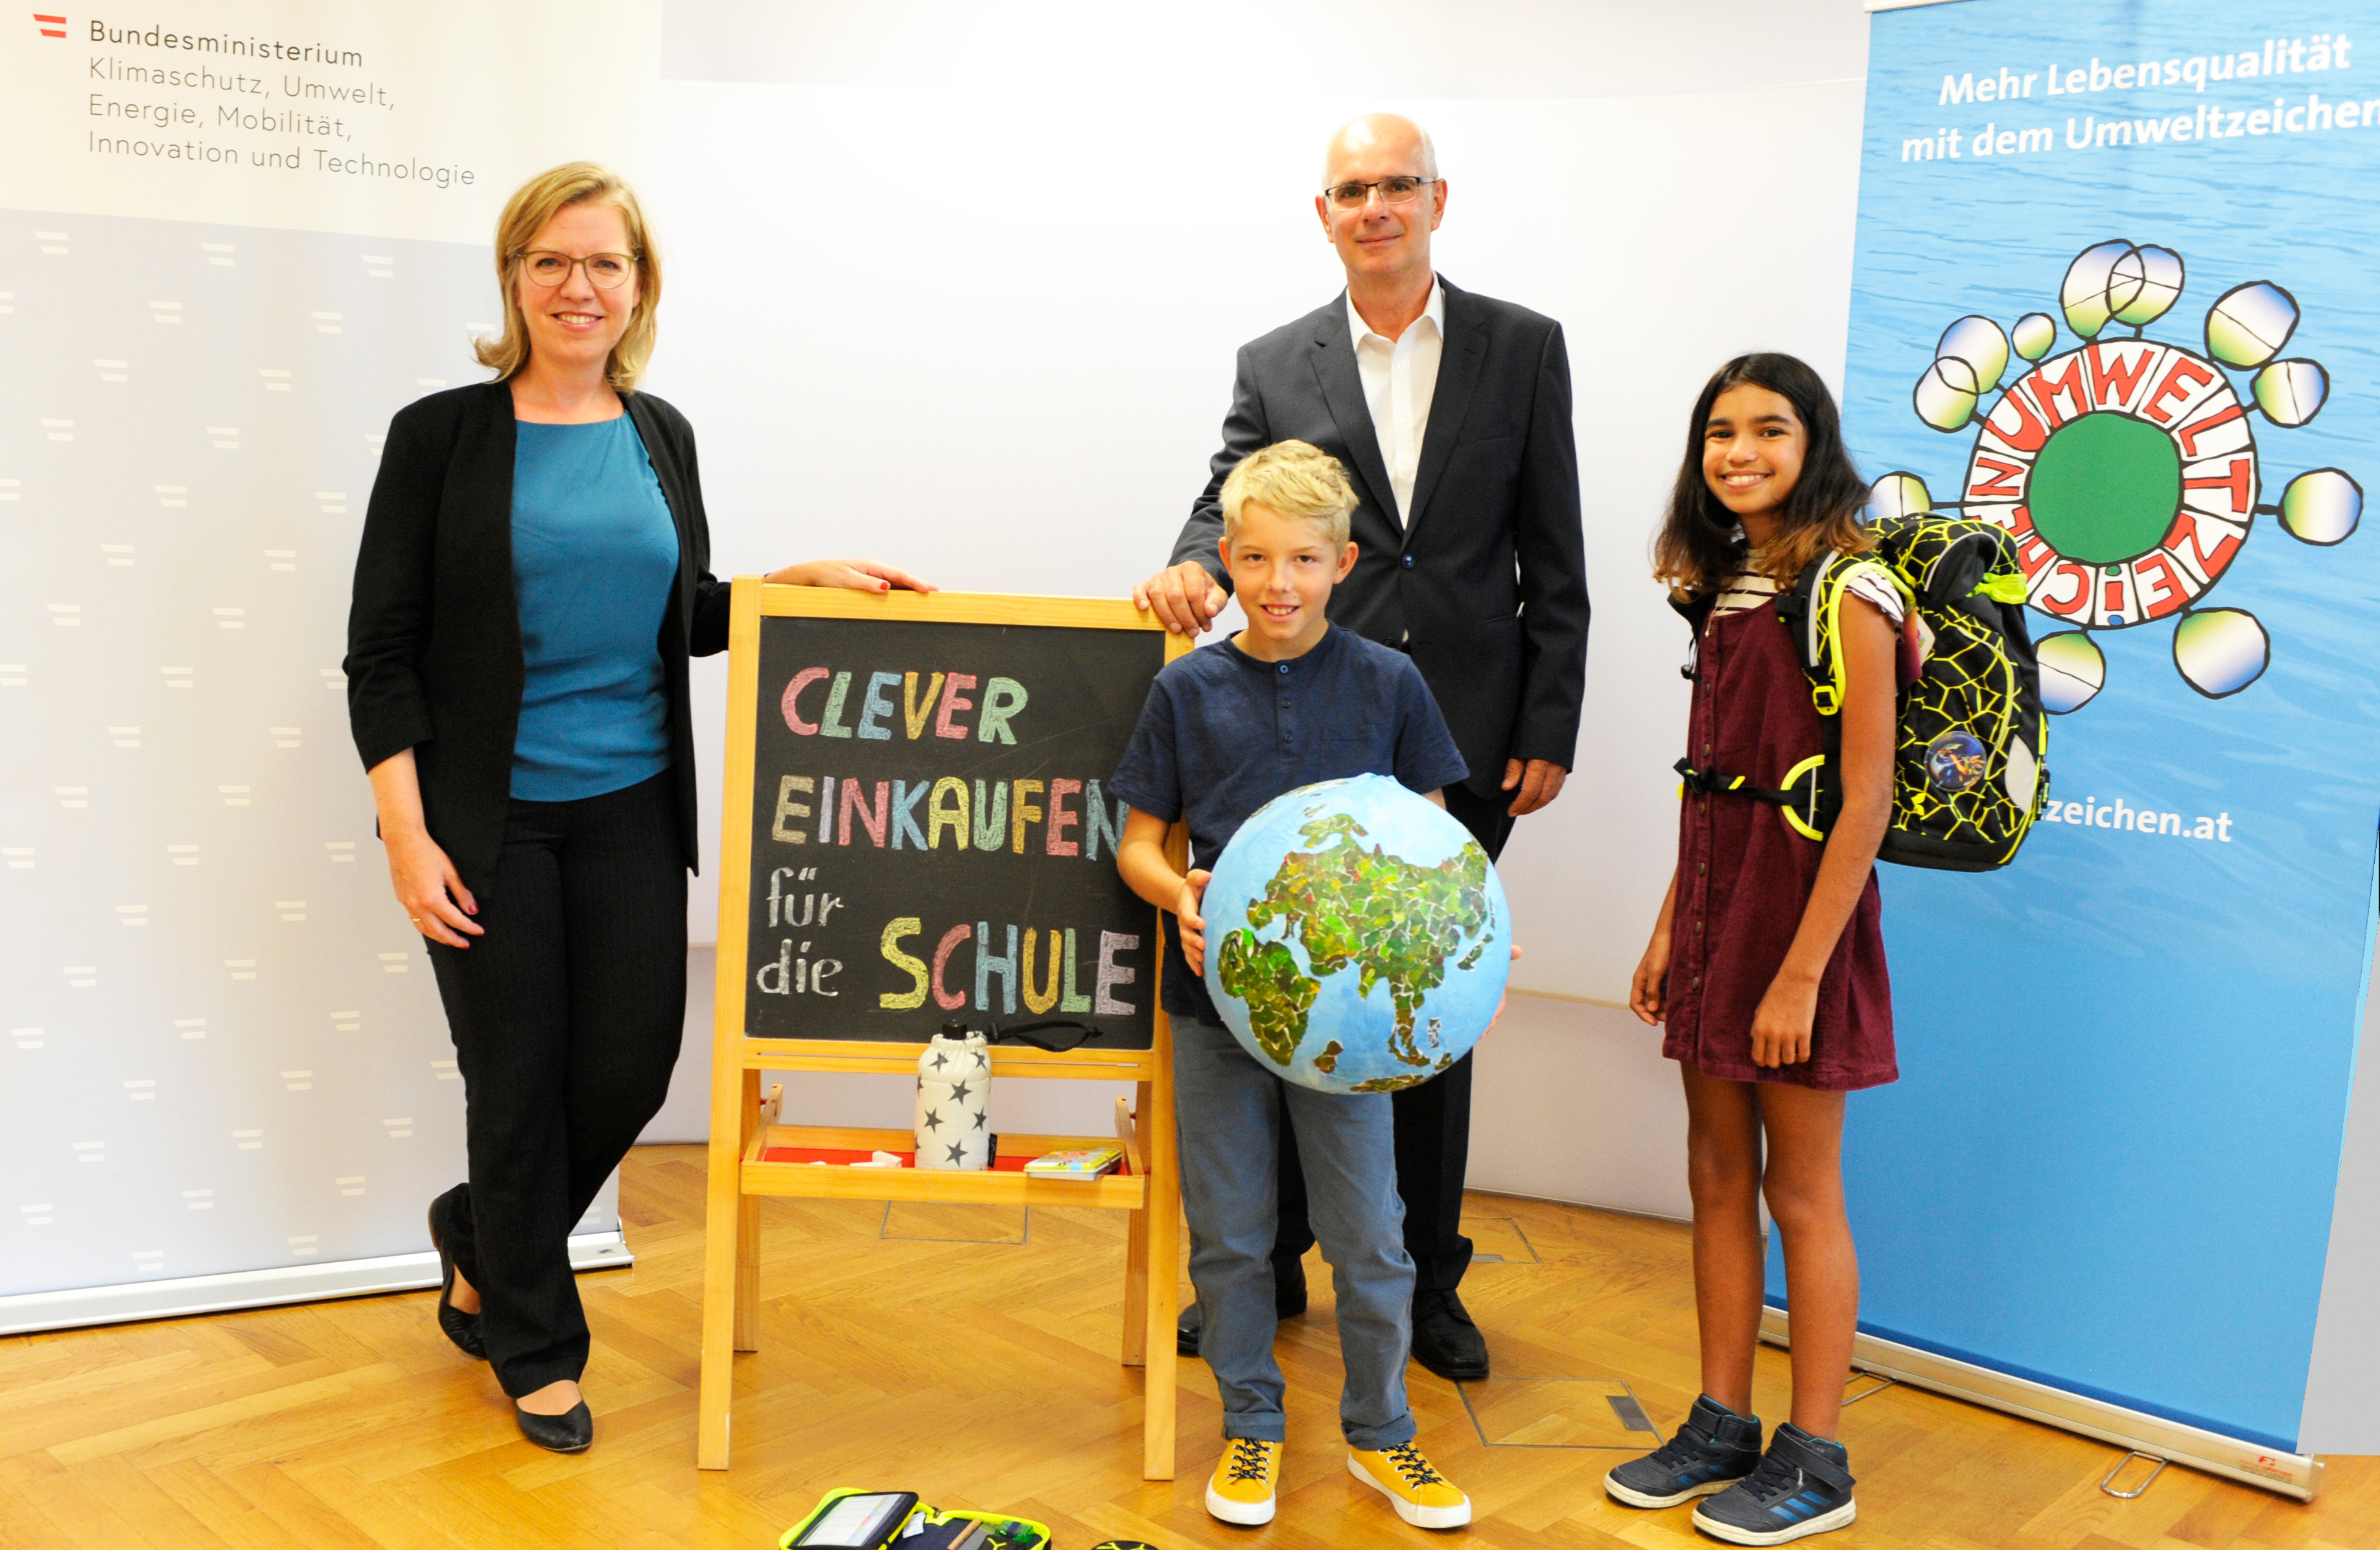 Ministerin Leonore Gewessler mit zwei Schulkindern und einer Tafel mit der Aufschrift "Clever einkaufen für die Schule"